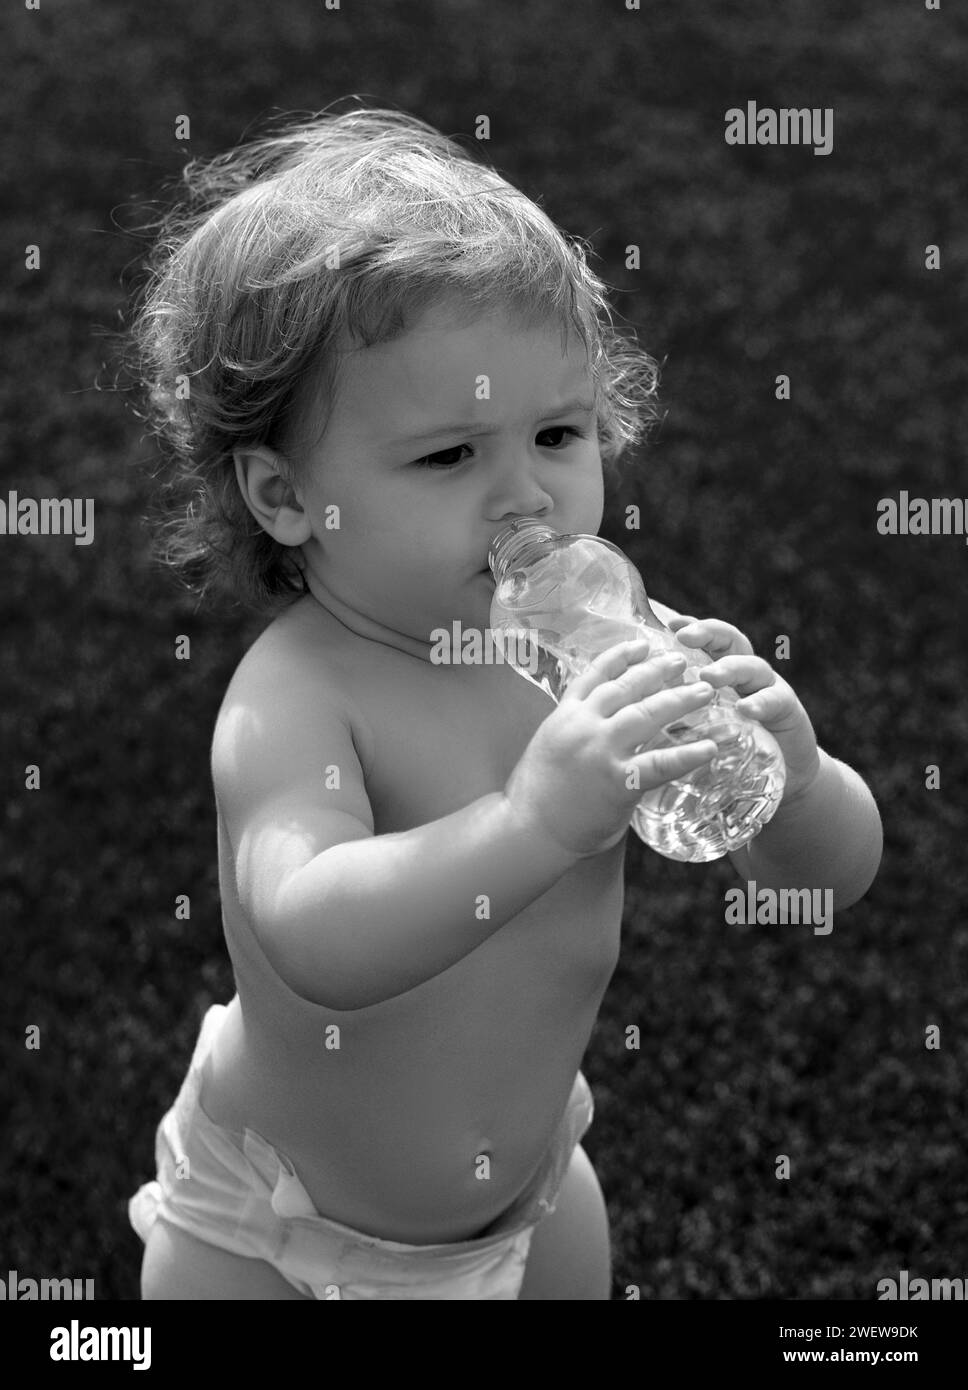 Eau potable pour bébé.Gros plan d'un petit enfant blond qui boit de l'eau fraîche et pure à partir d'une bouteille avec un fond d'herbe verte floue. Banque D'Images